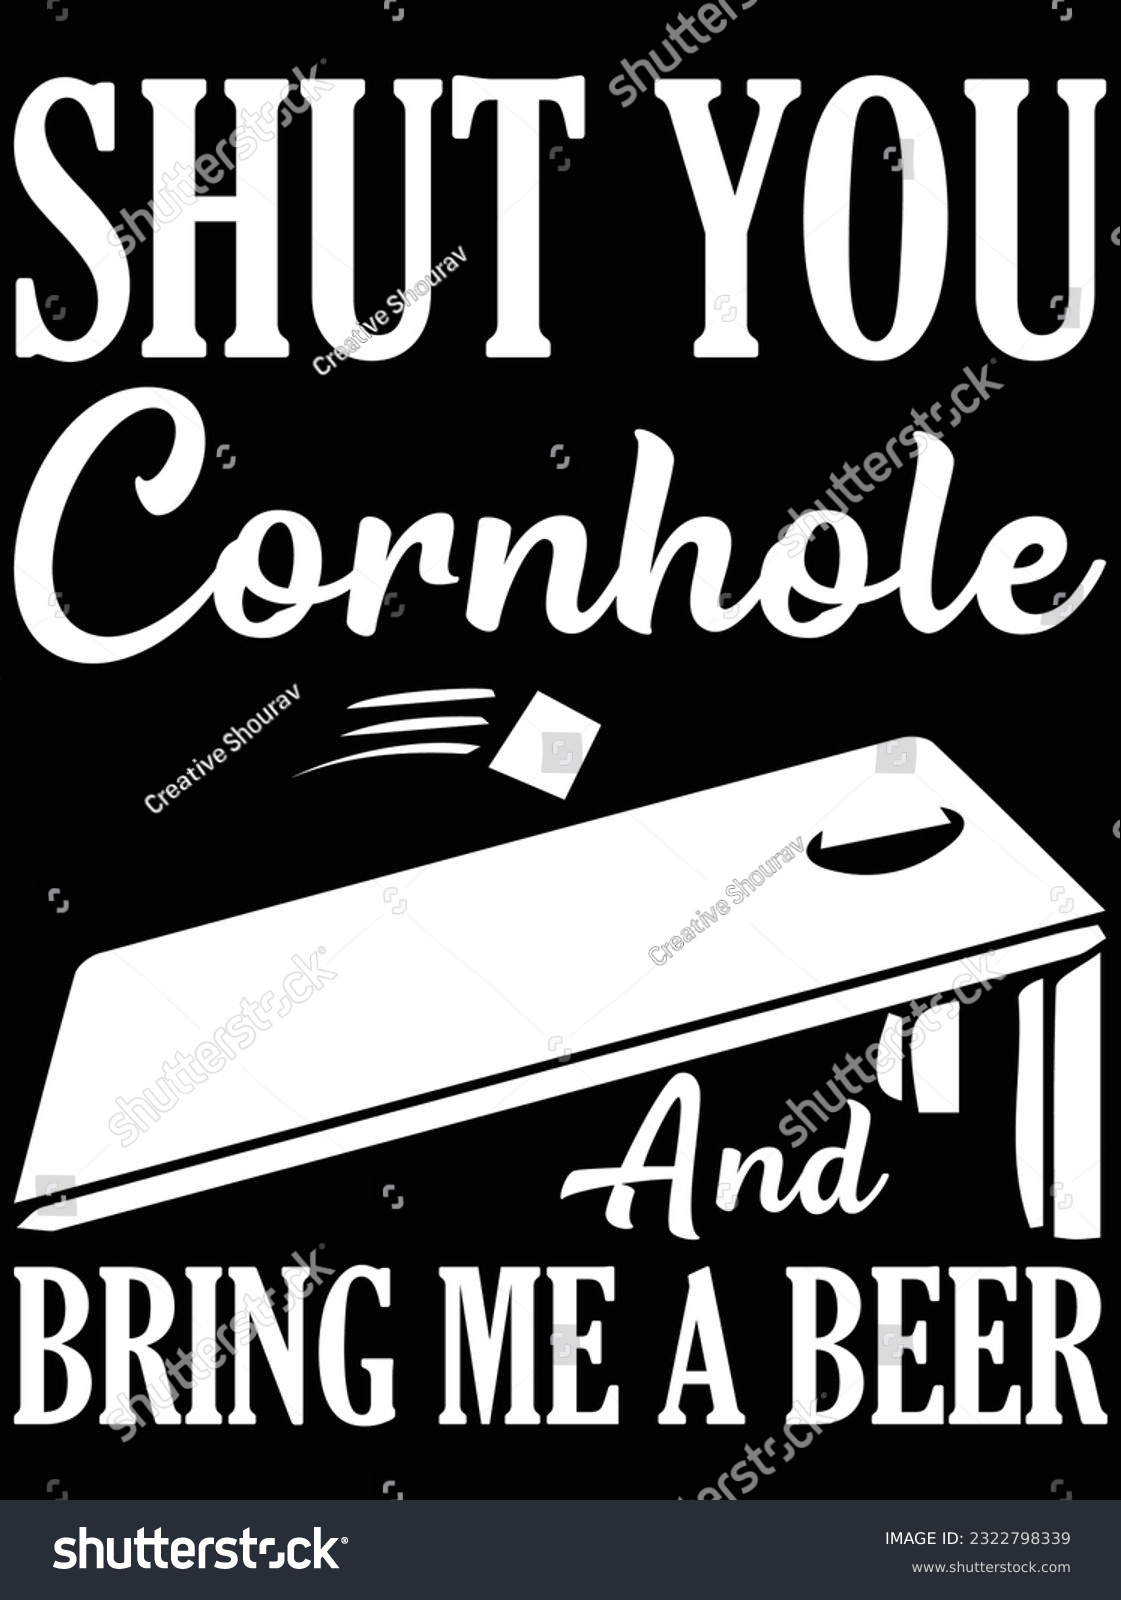 SVG of Shut you cornhole and bring me a beer vector art design, eps file. design file for t-shirt. SVG, EPS cuttable design file svg